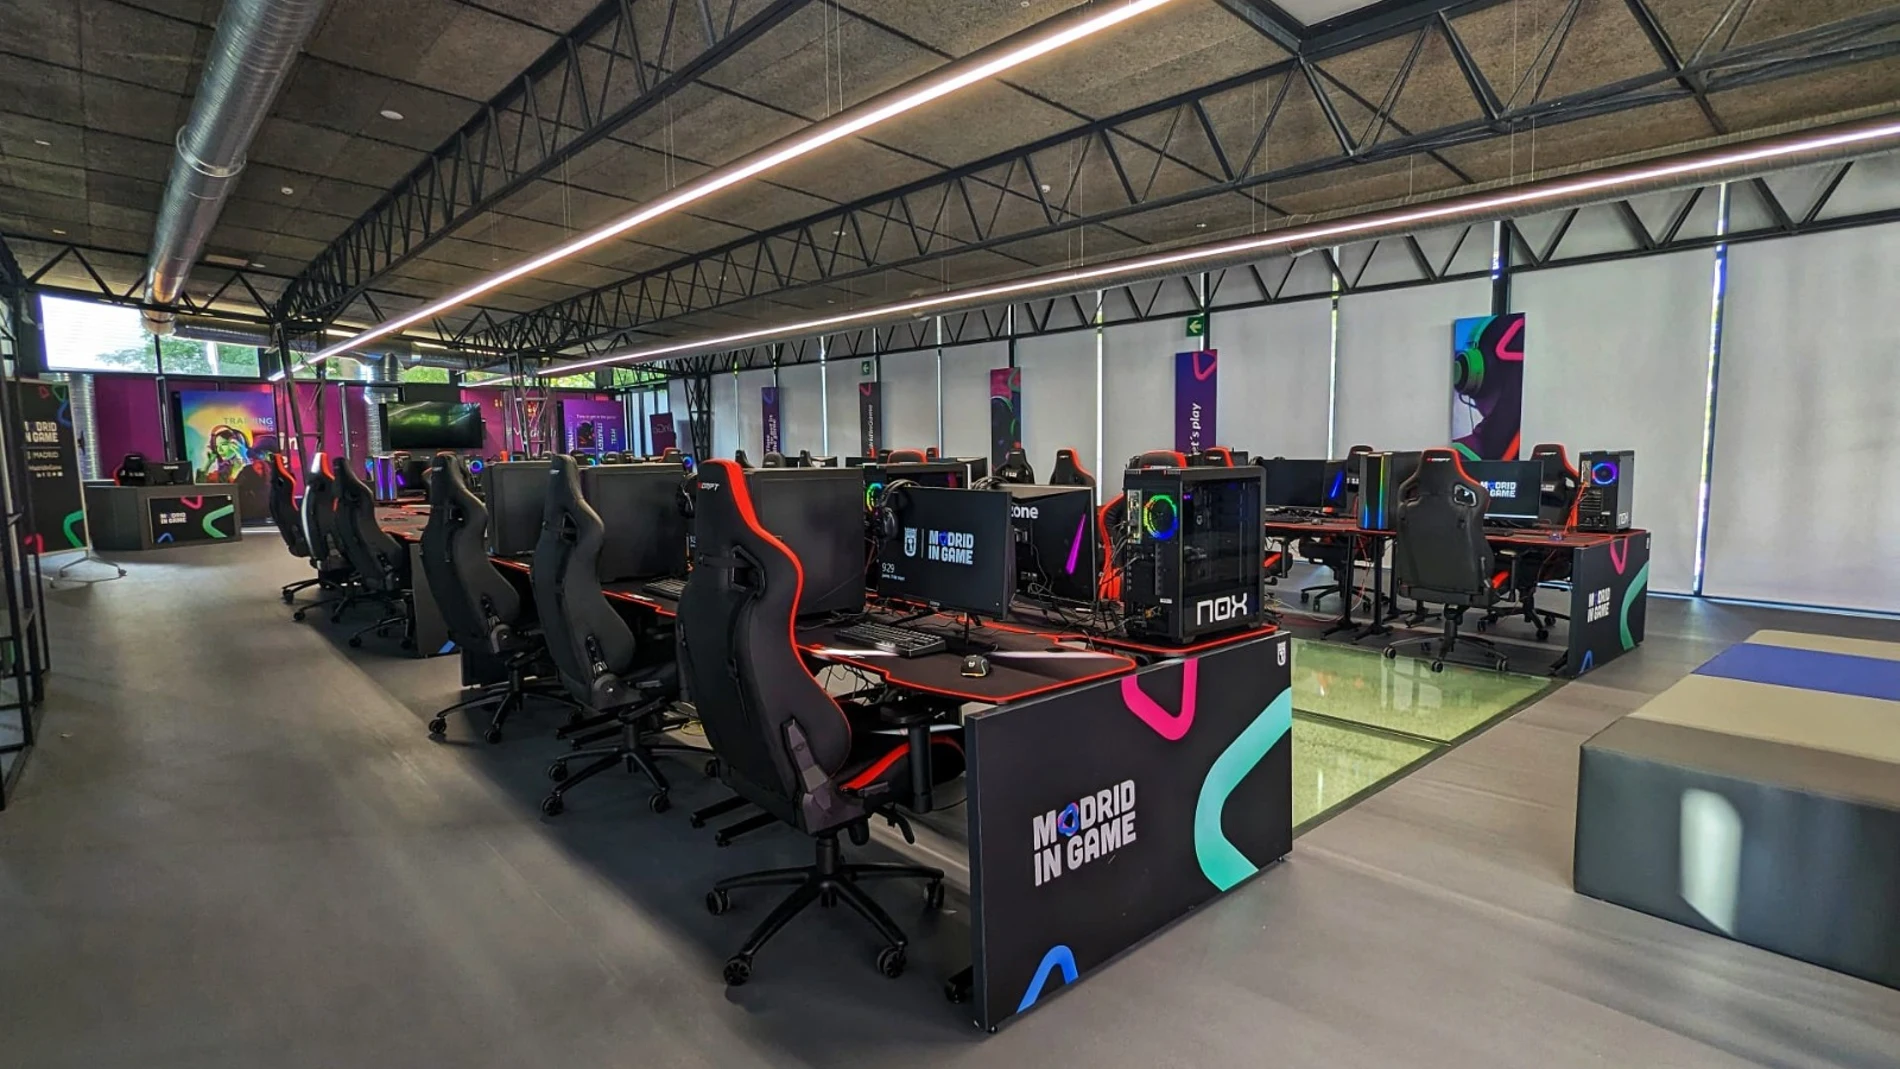 El Esports Center de Madrid In Game abre sus puertas a la ciudadanía como centro de entrenamiento